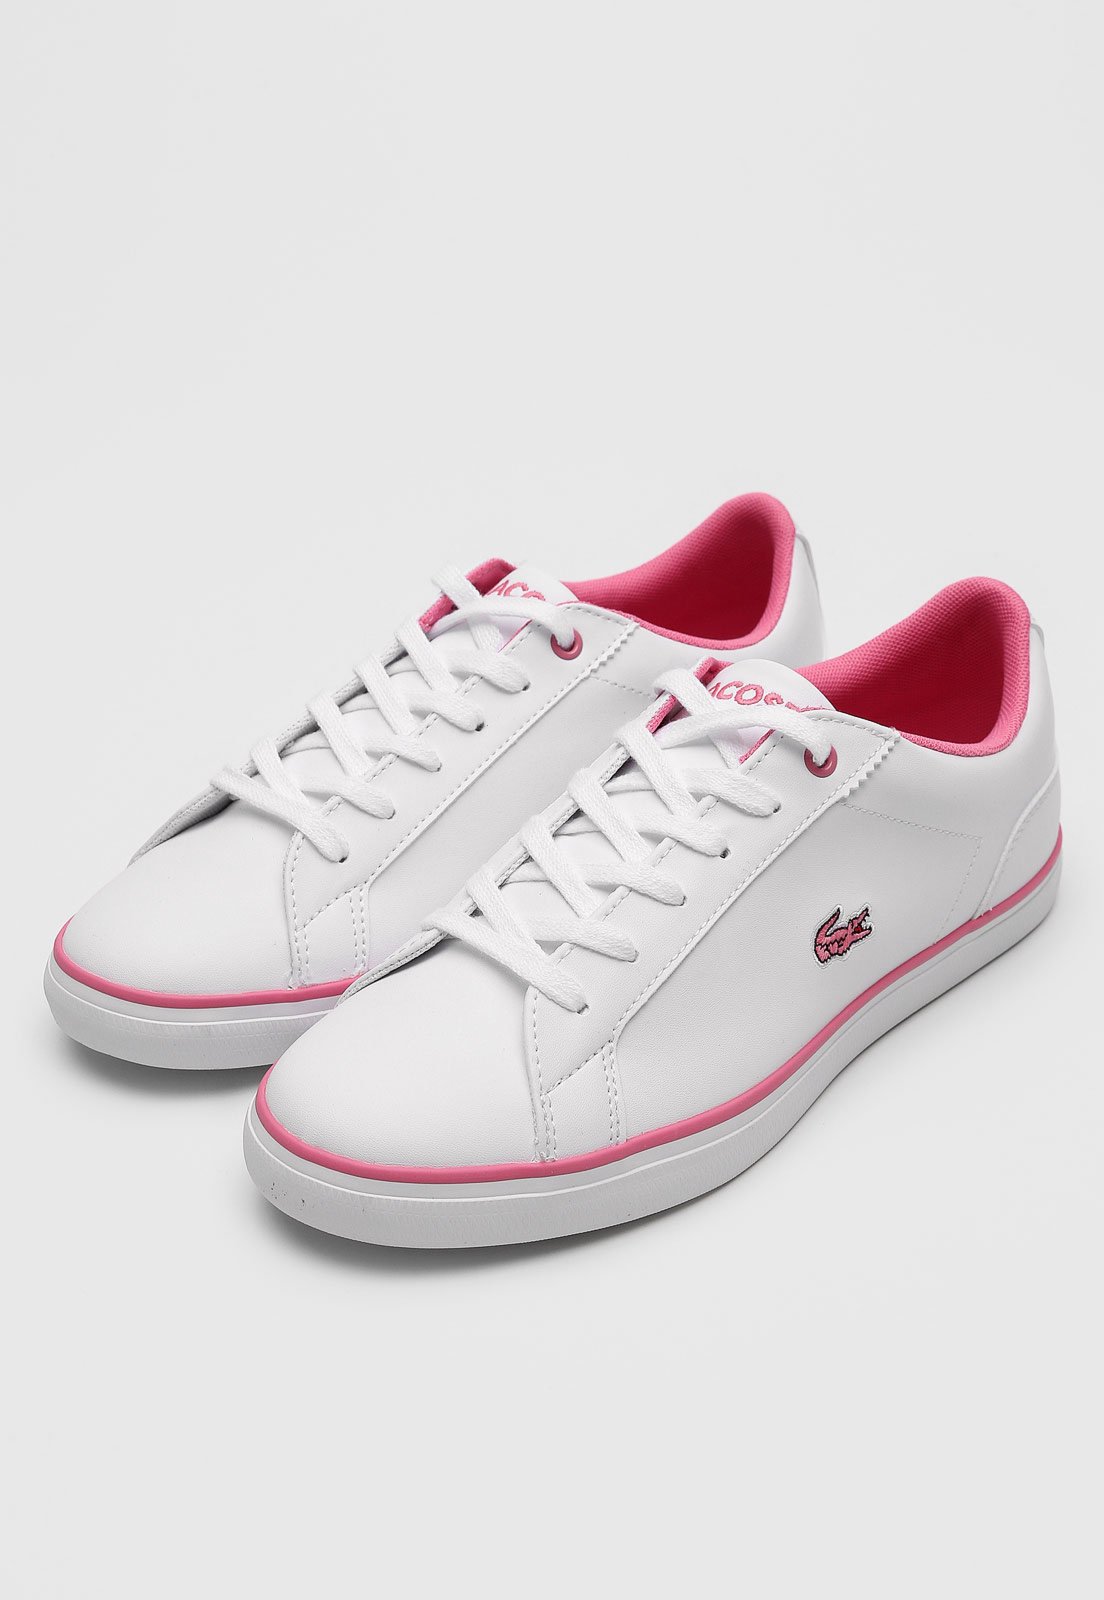 tenis lacoste branco e rosa